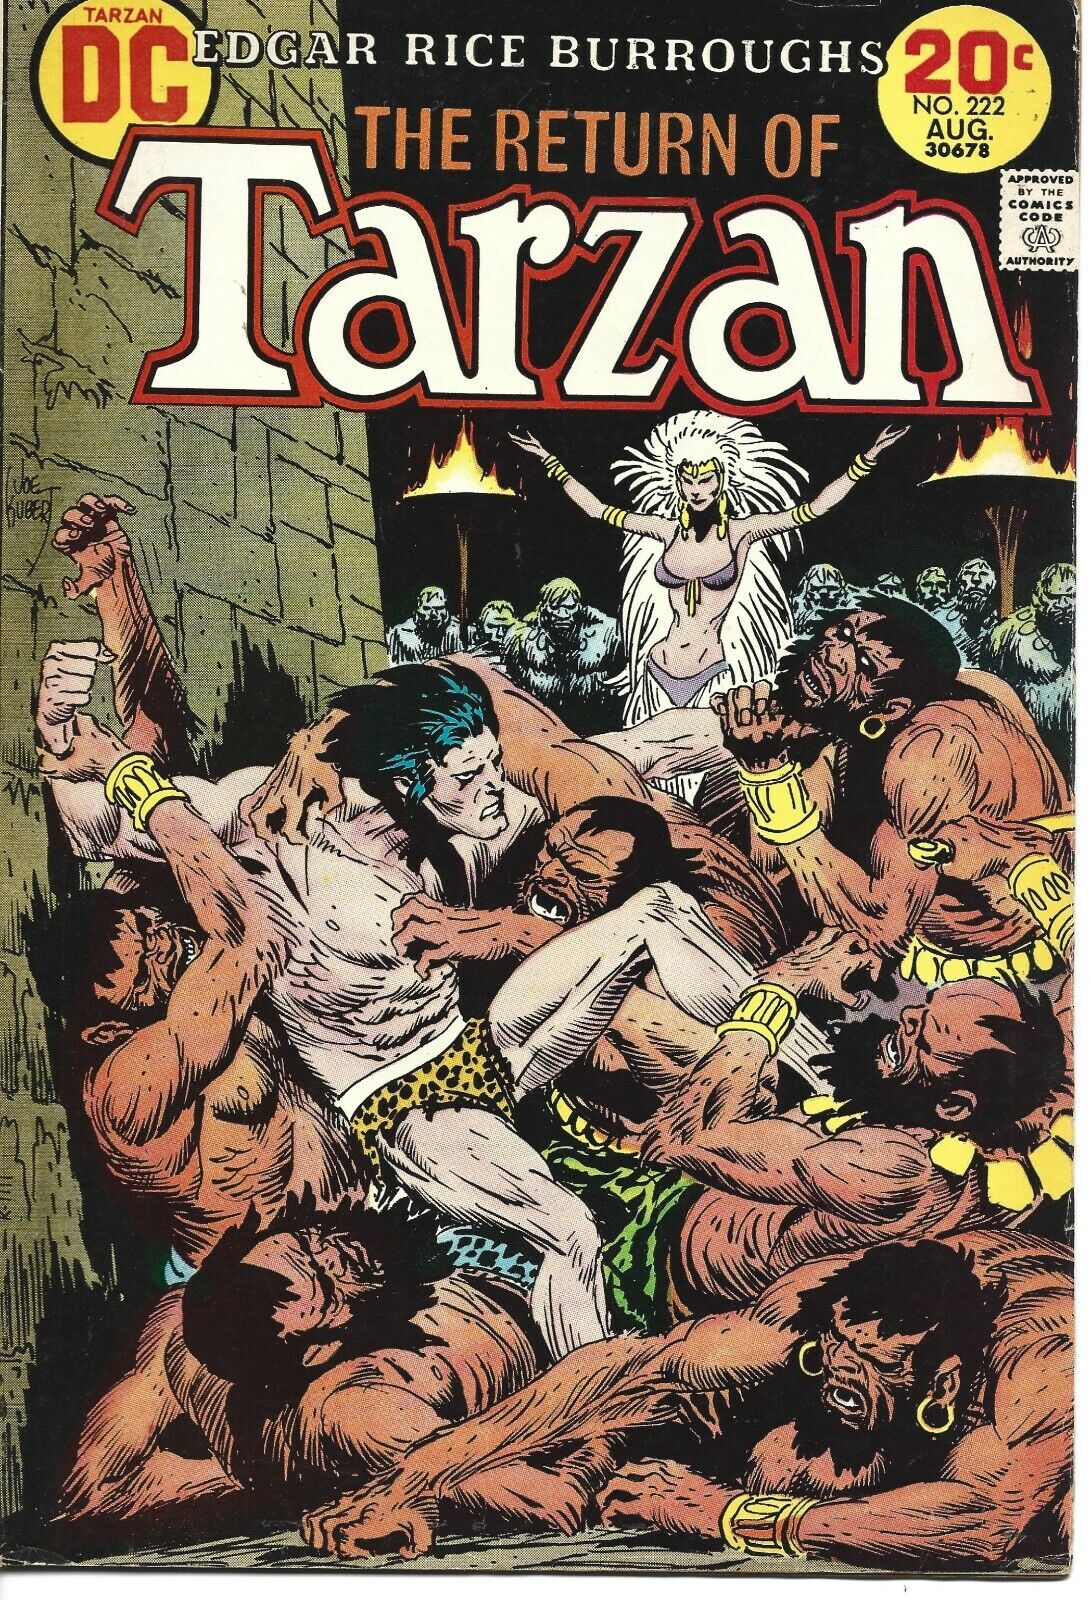 TARZAN #222 DC COMICS 1973 BAGGED AND BOARDED